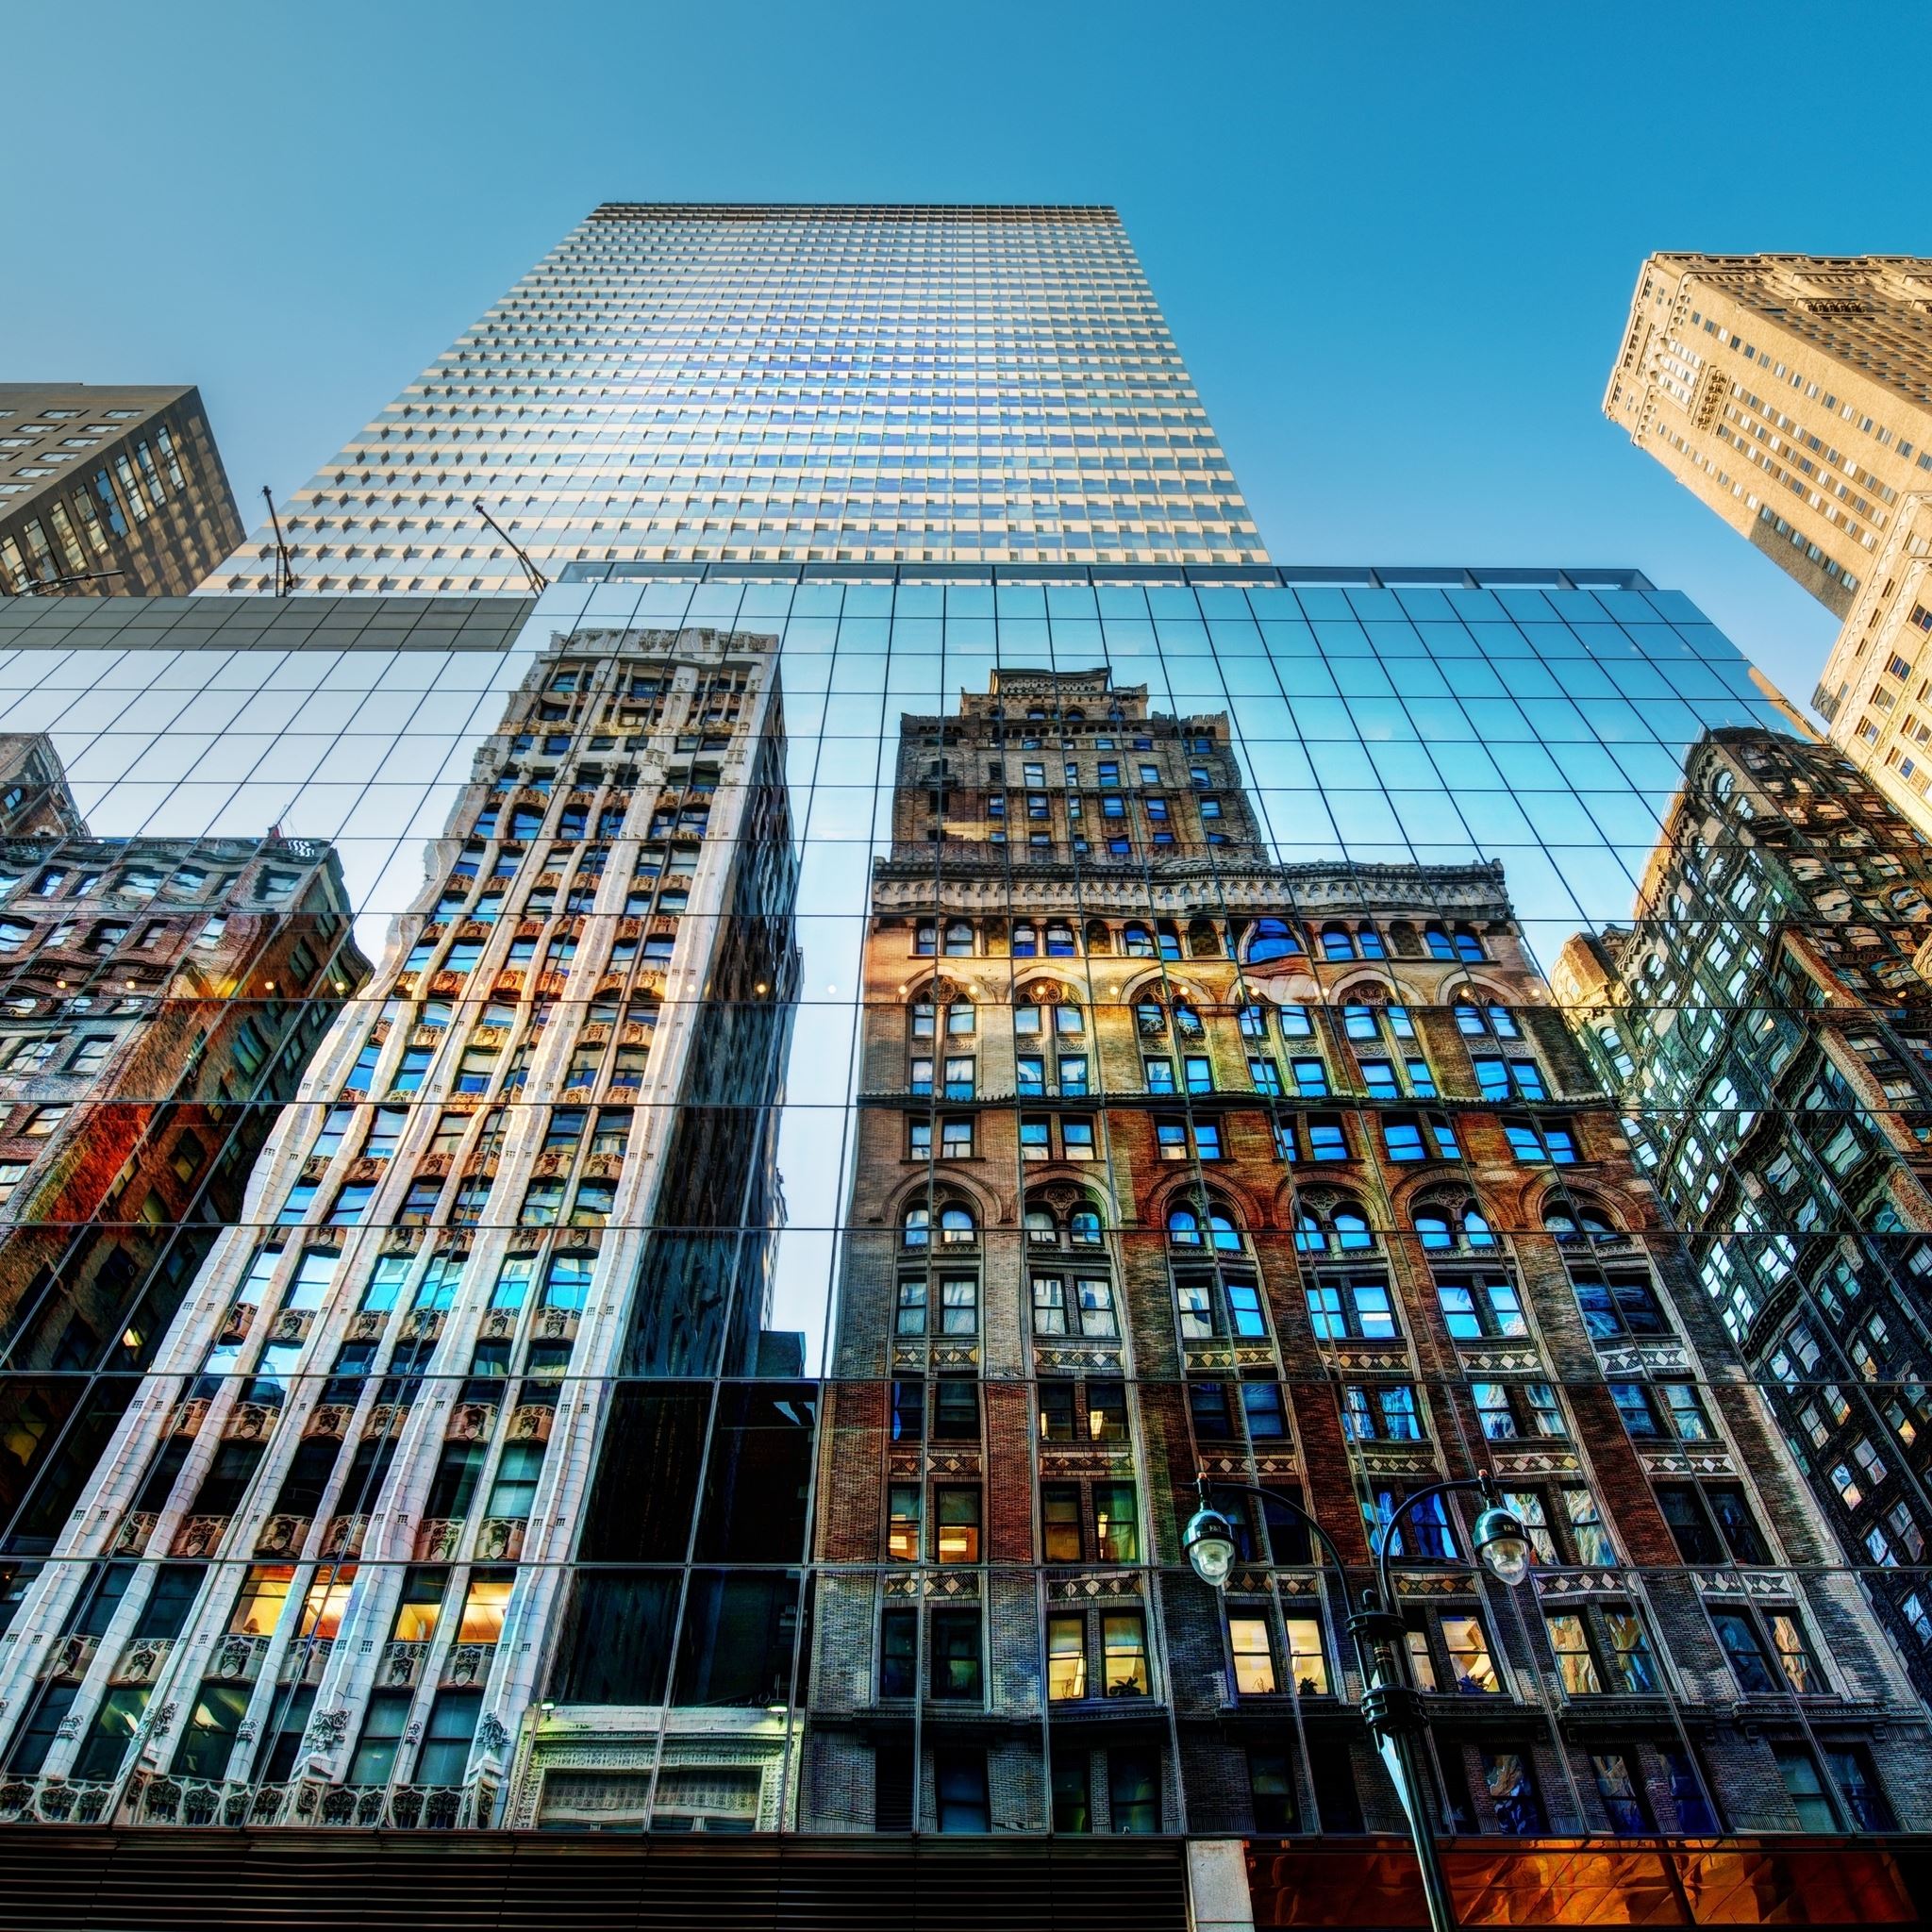 New York City Buildings iPad Air wallpaper 